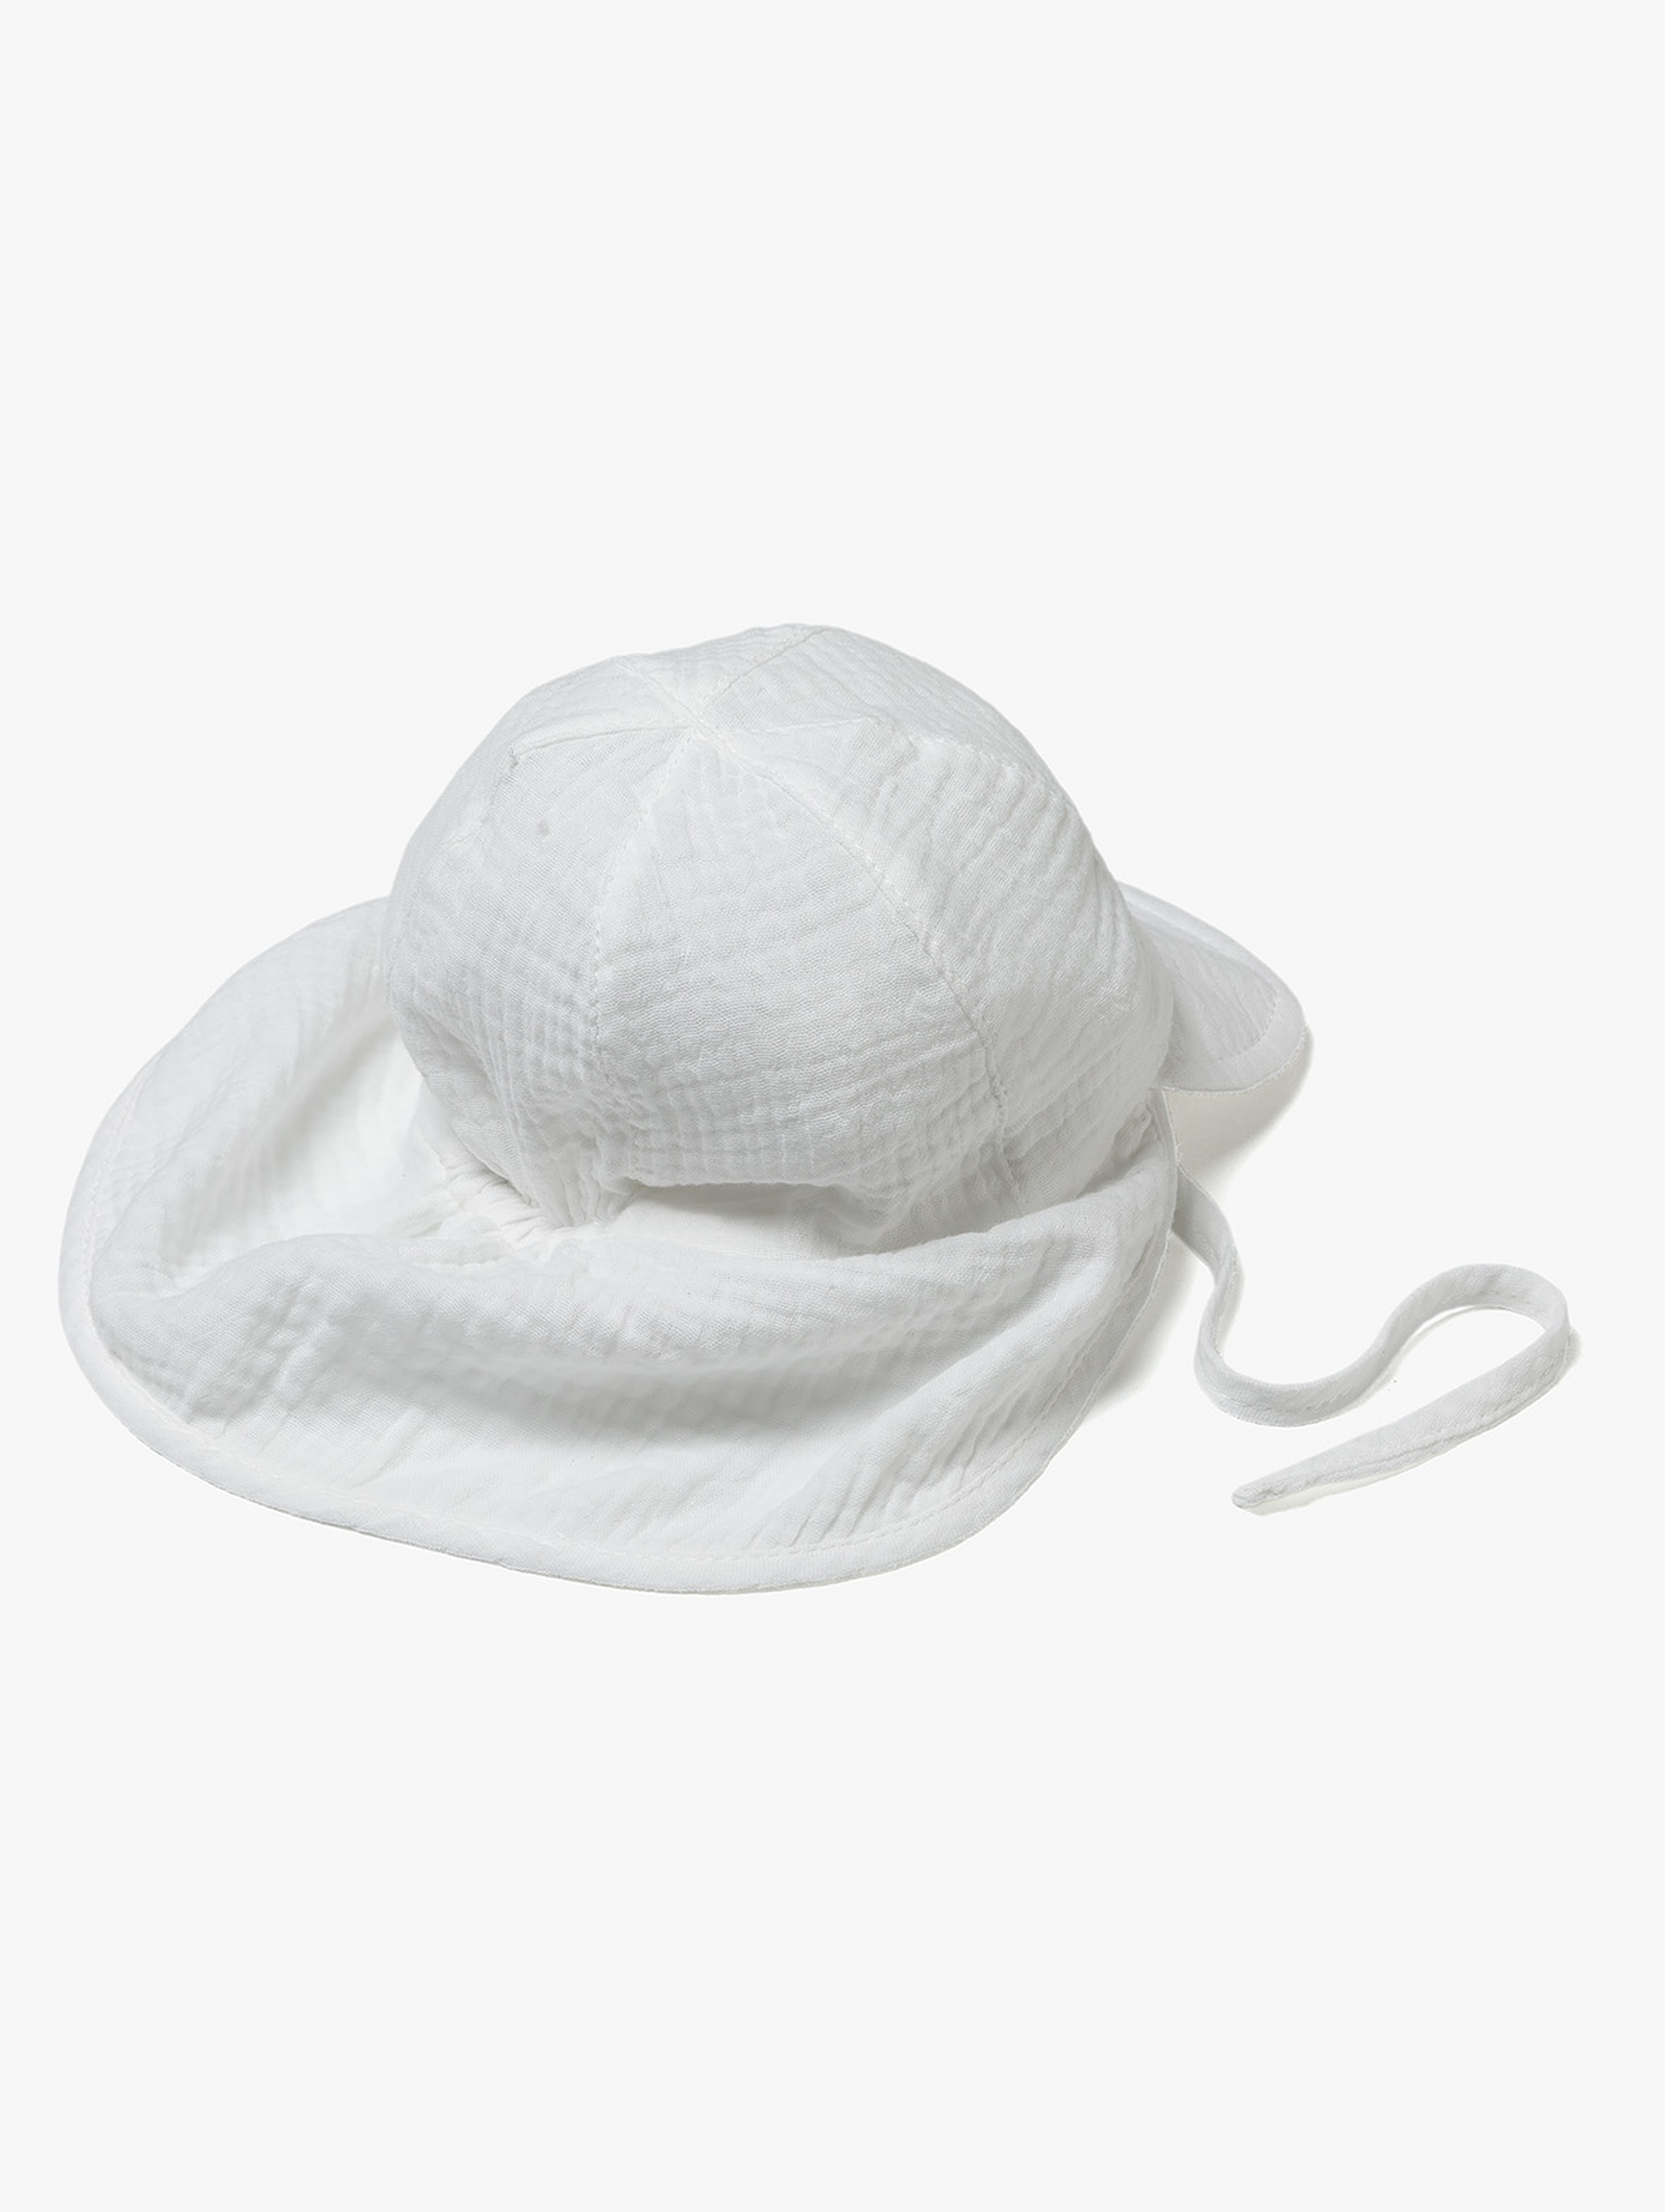 Biała tkaninowa czapka z daszkiem dla niemowlaka - 5.10.15.